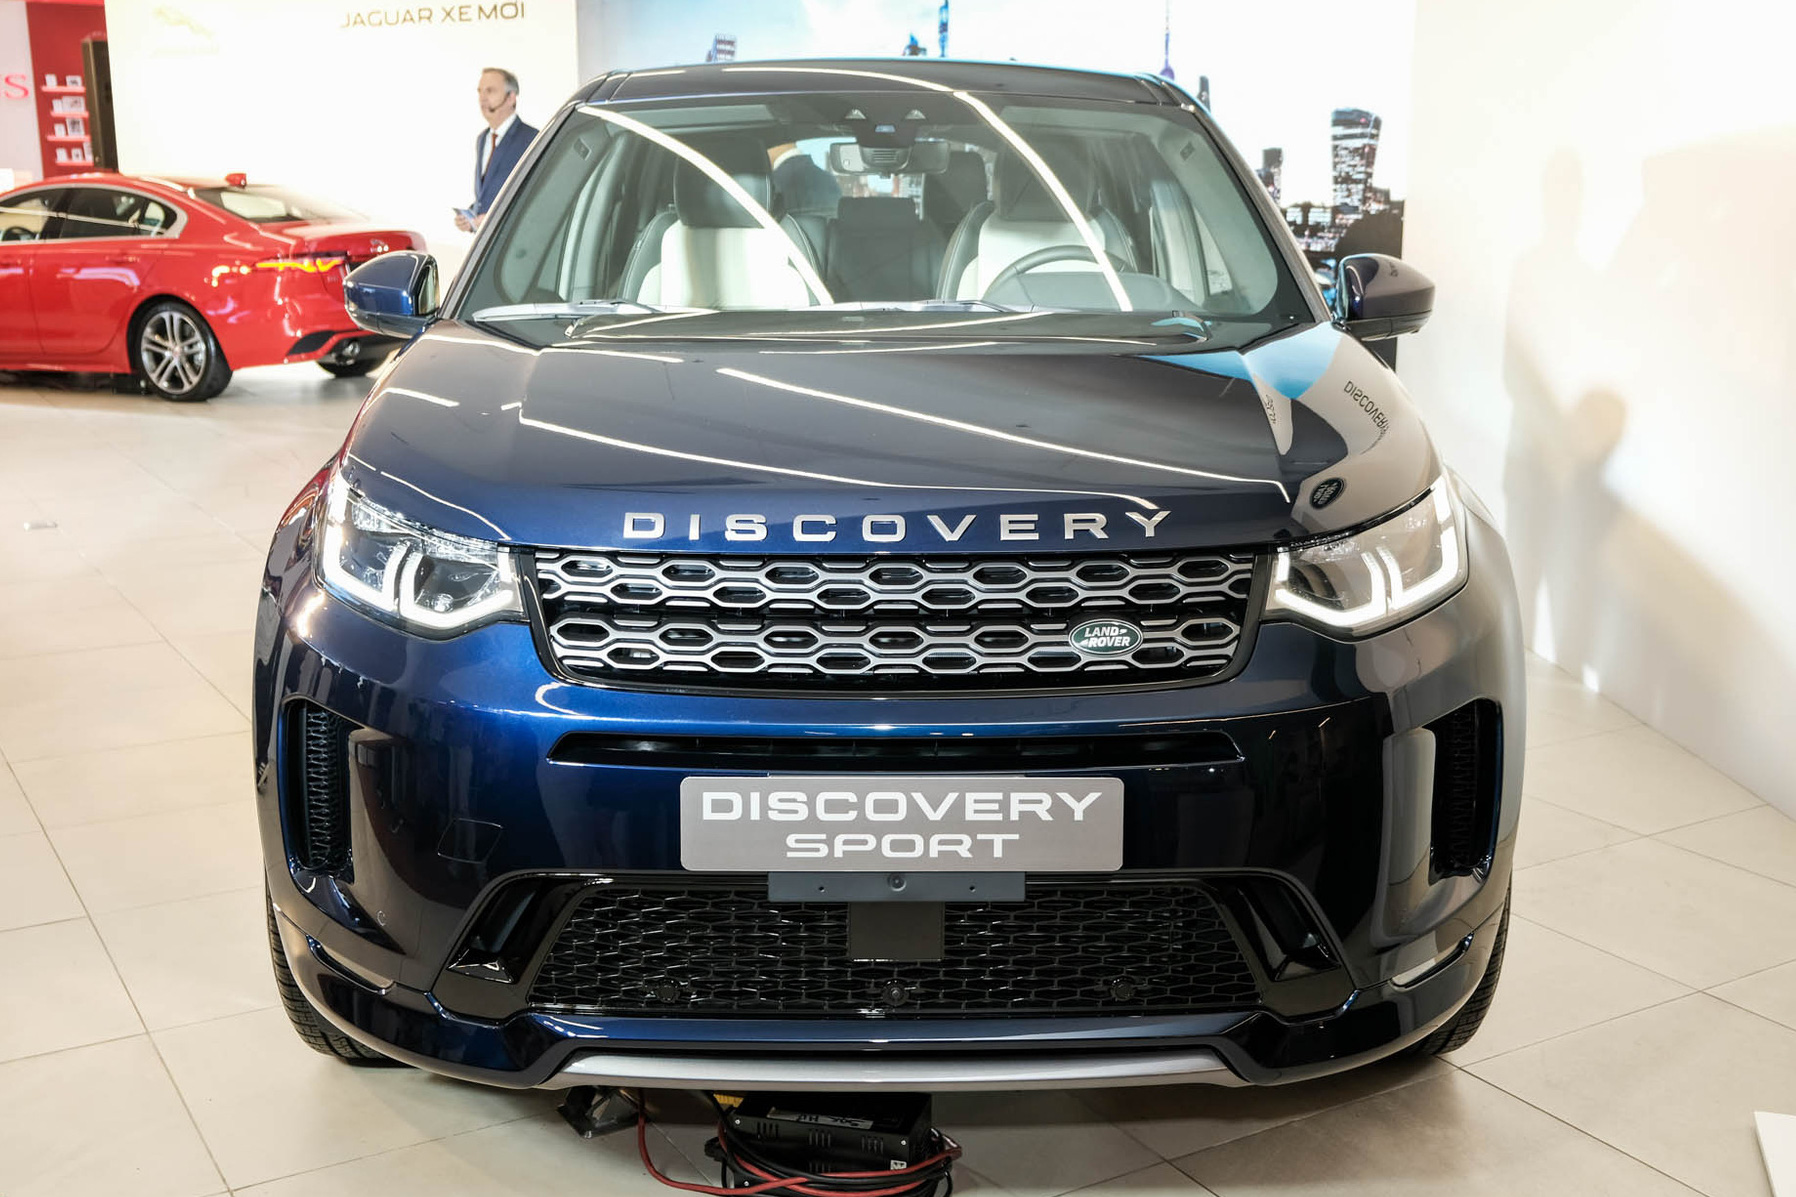 Land Rover Discovery Sport 2020 ra mắt khách Việt: 5 phiên bản, giá cao nhất hơn 3,8 tỷ đồng, nhiều tùy chọn cơ bản nhưng phải trả thêm tiền